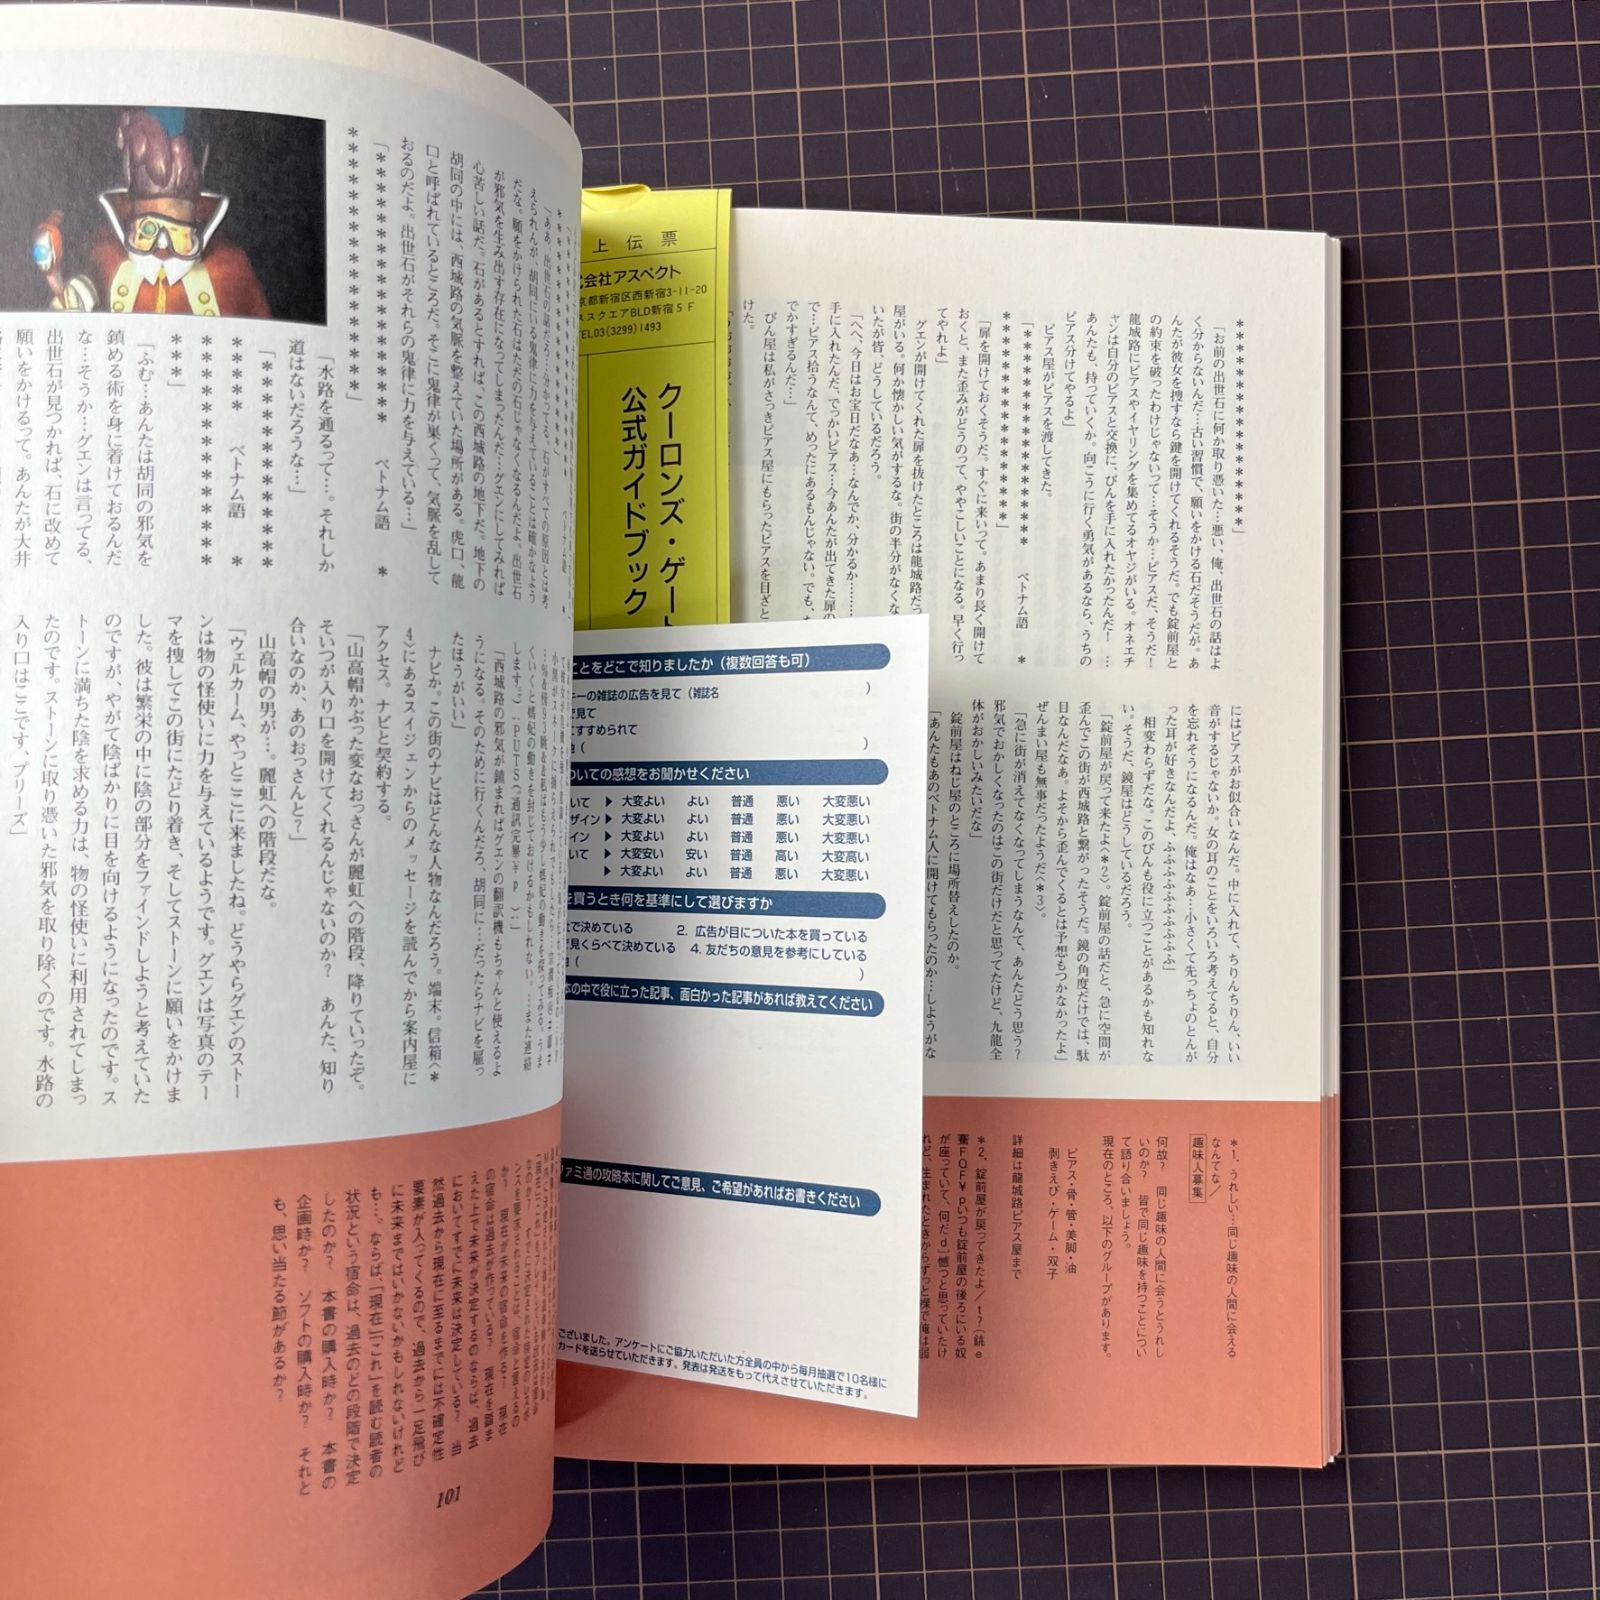 クーロンズ・ゲート公式ガイドブック 単行本 – 1997/6/1 ファミコン 